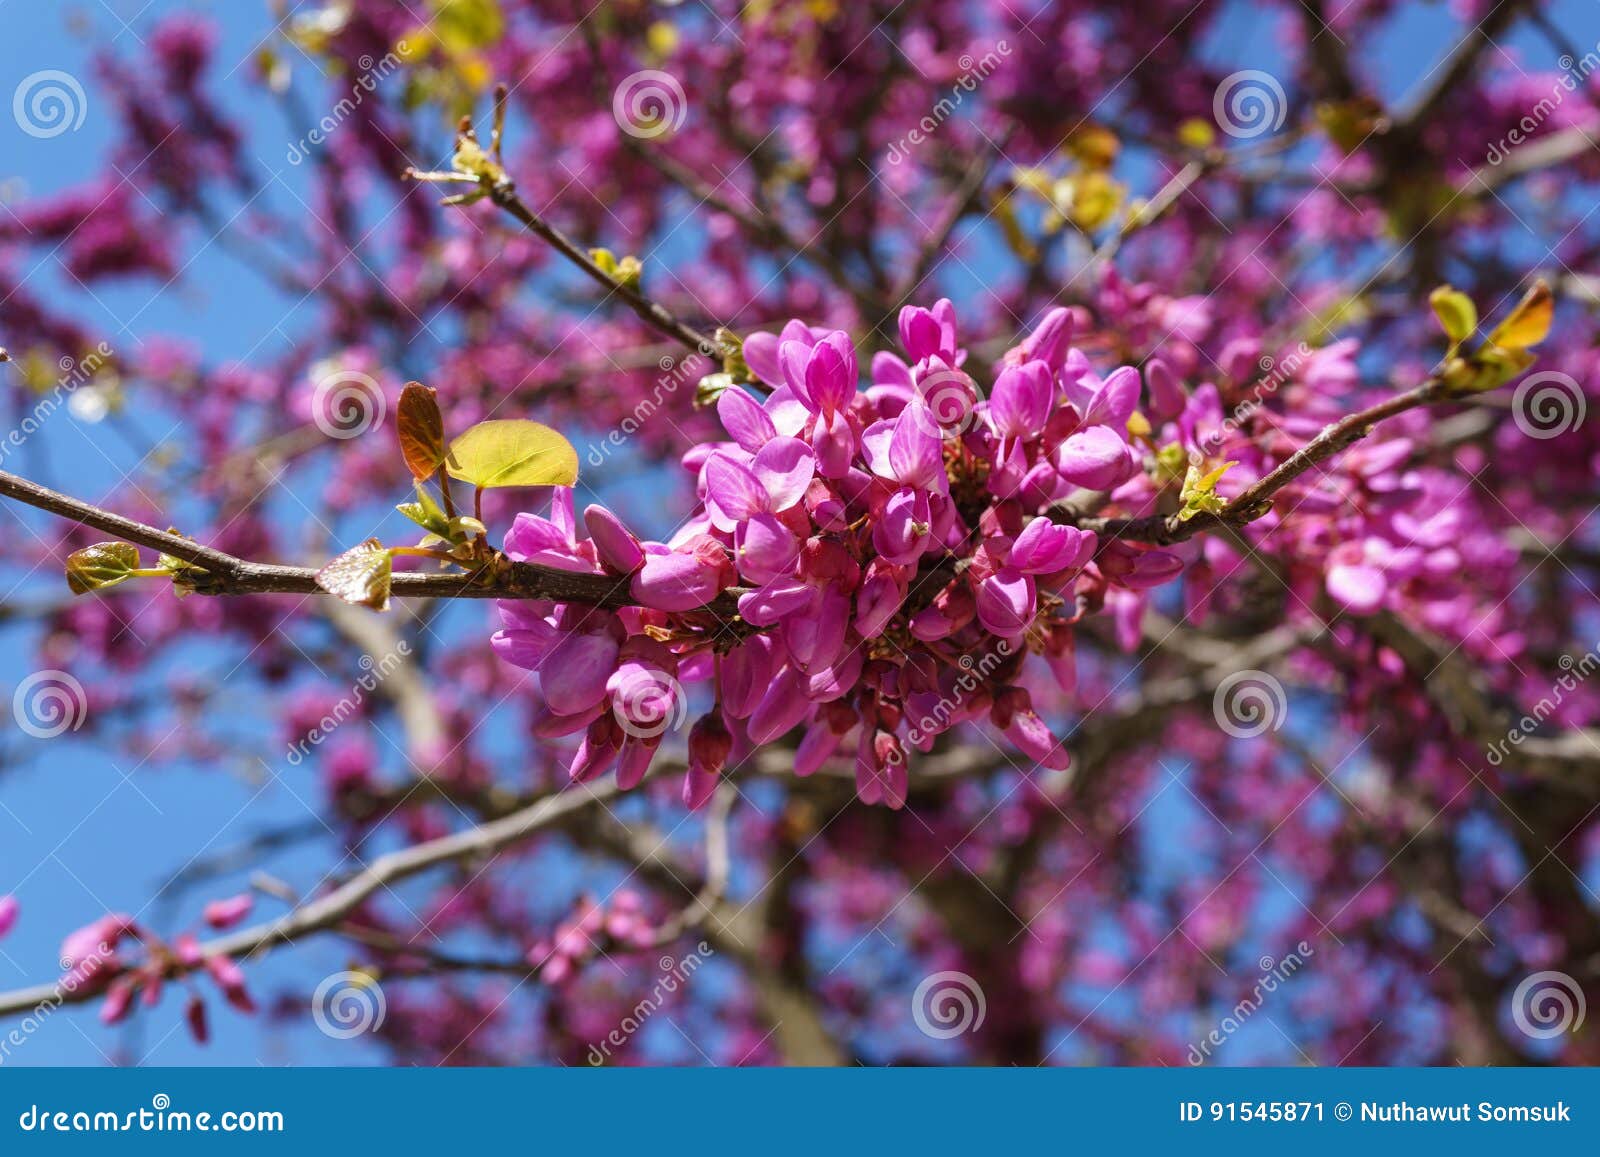 closed up of pink judas, judasbaum cercis siliquastrum flowers